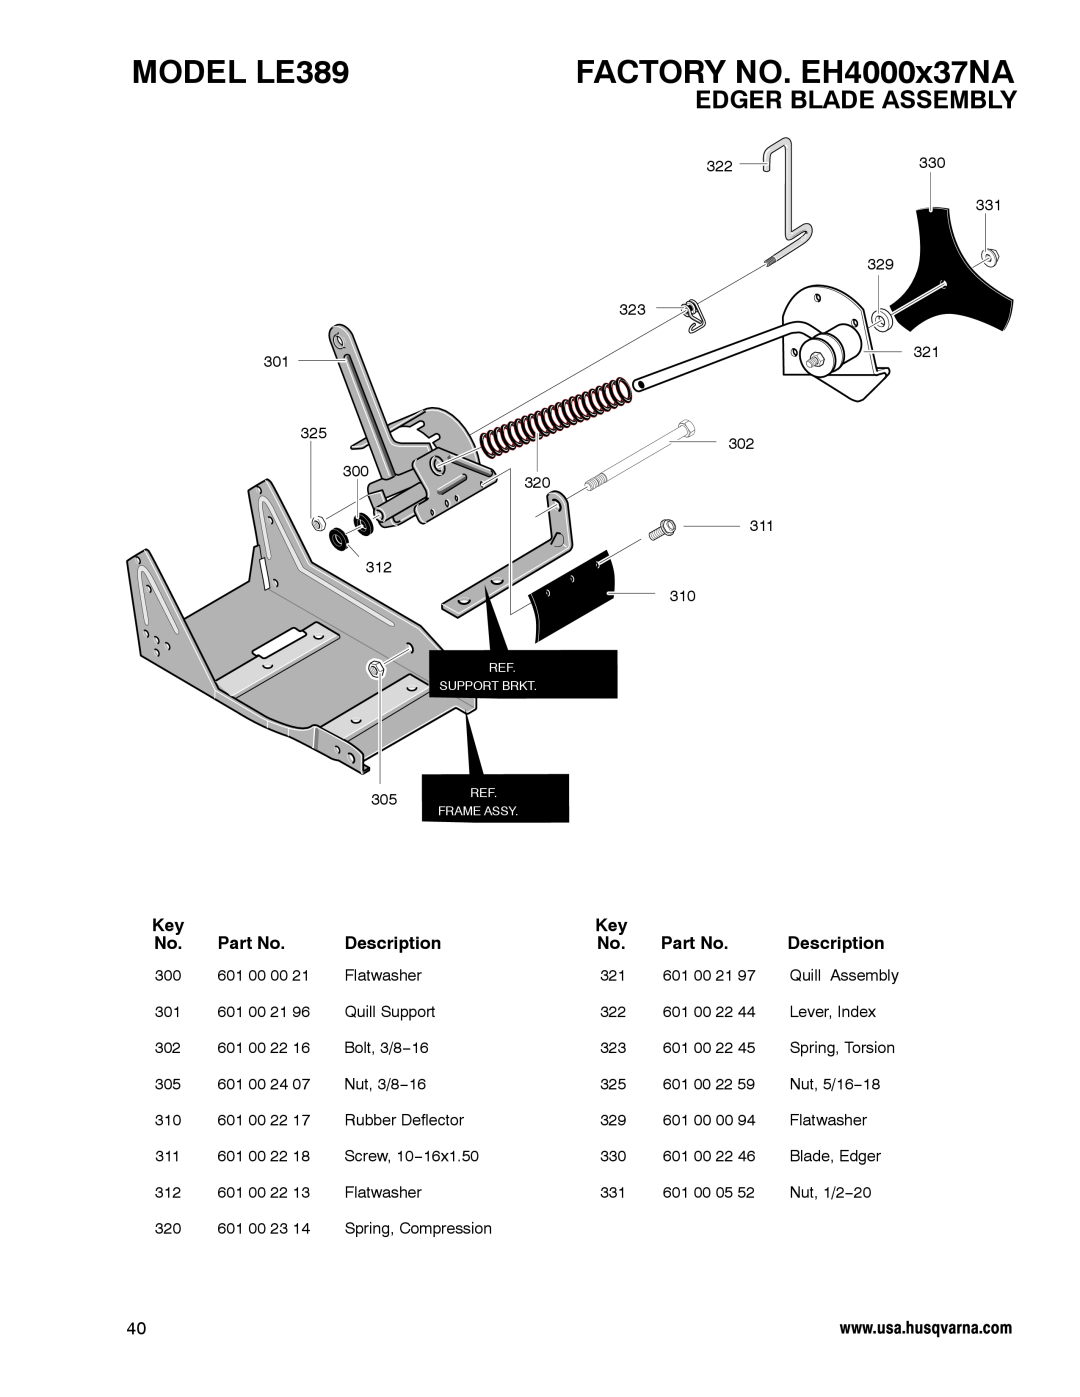 Husqvarna manual Edger Blade Assembly, MODEL LE389, FACTORY NO. EH4000x37NA, Description 